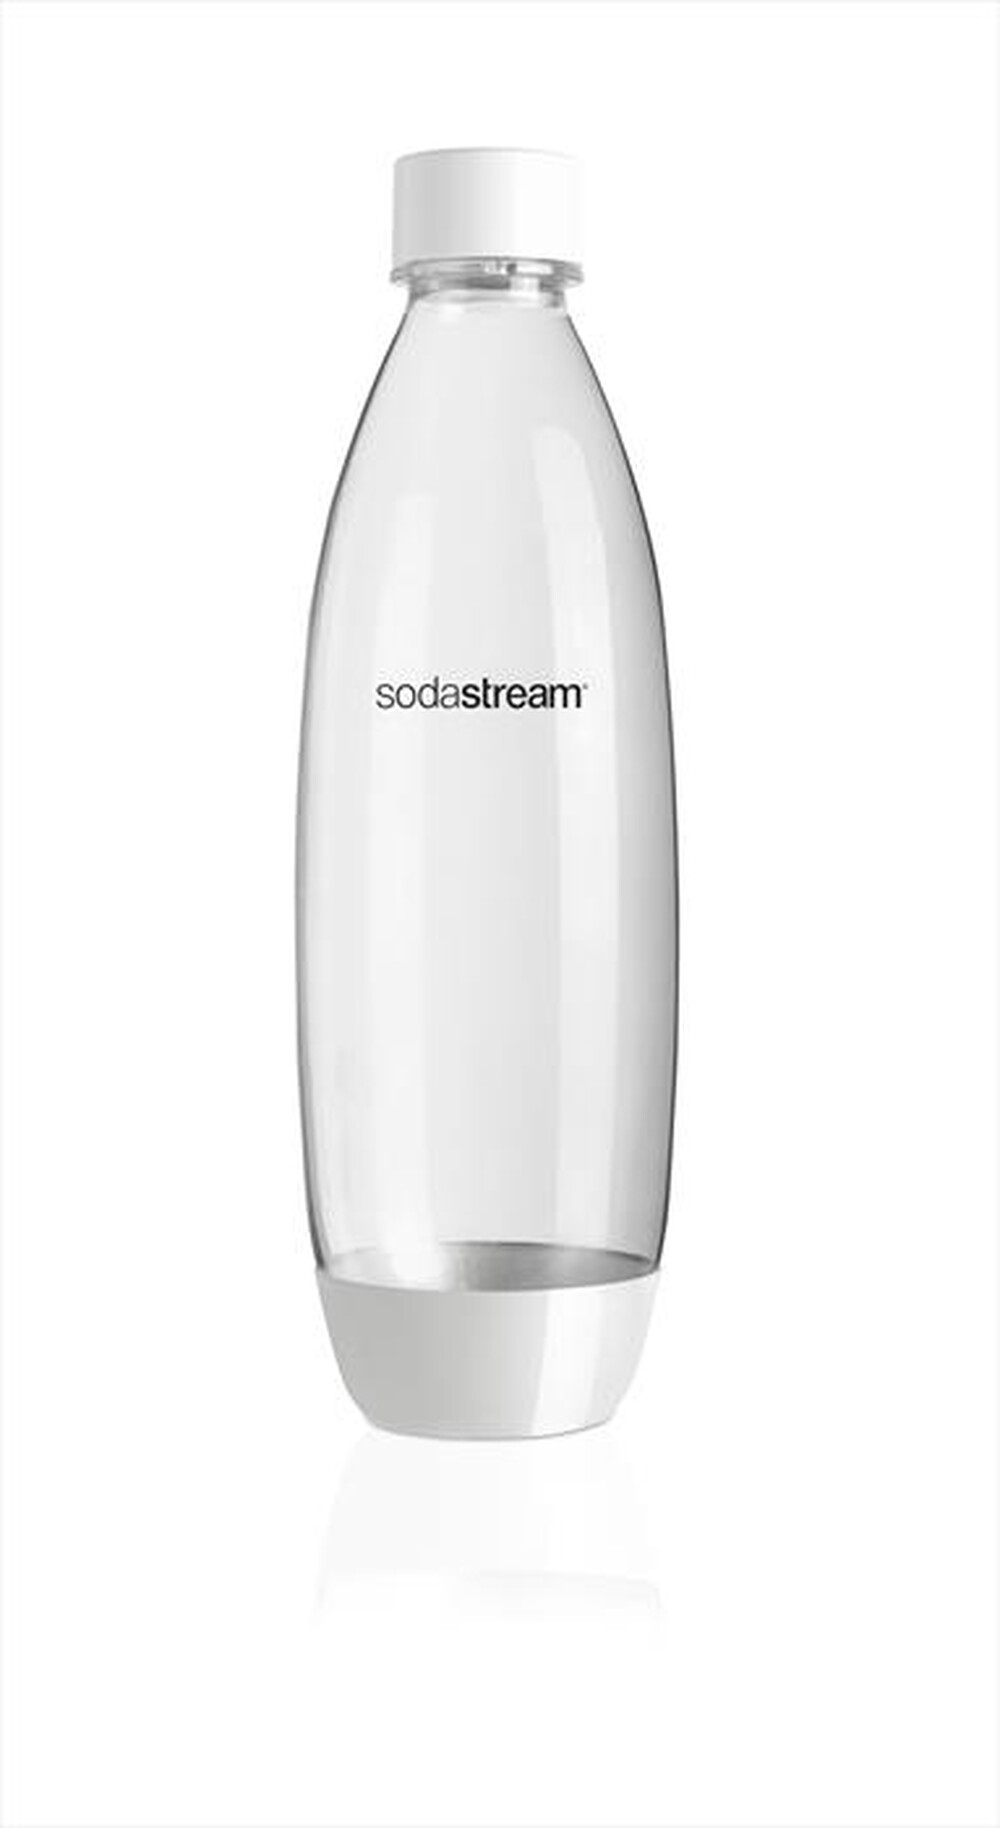 "SODASTREAM - Bottiglia Fuse in Plastica (tripack)"